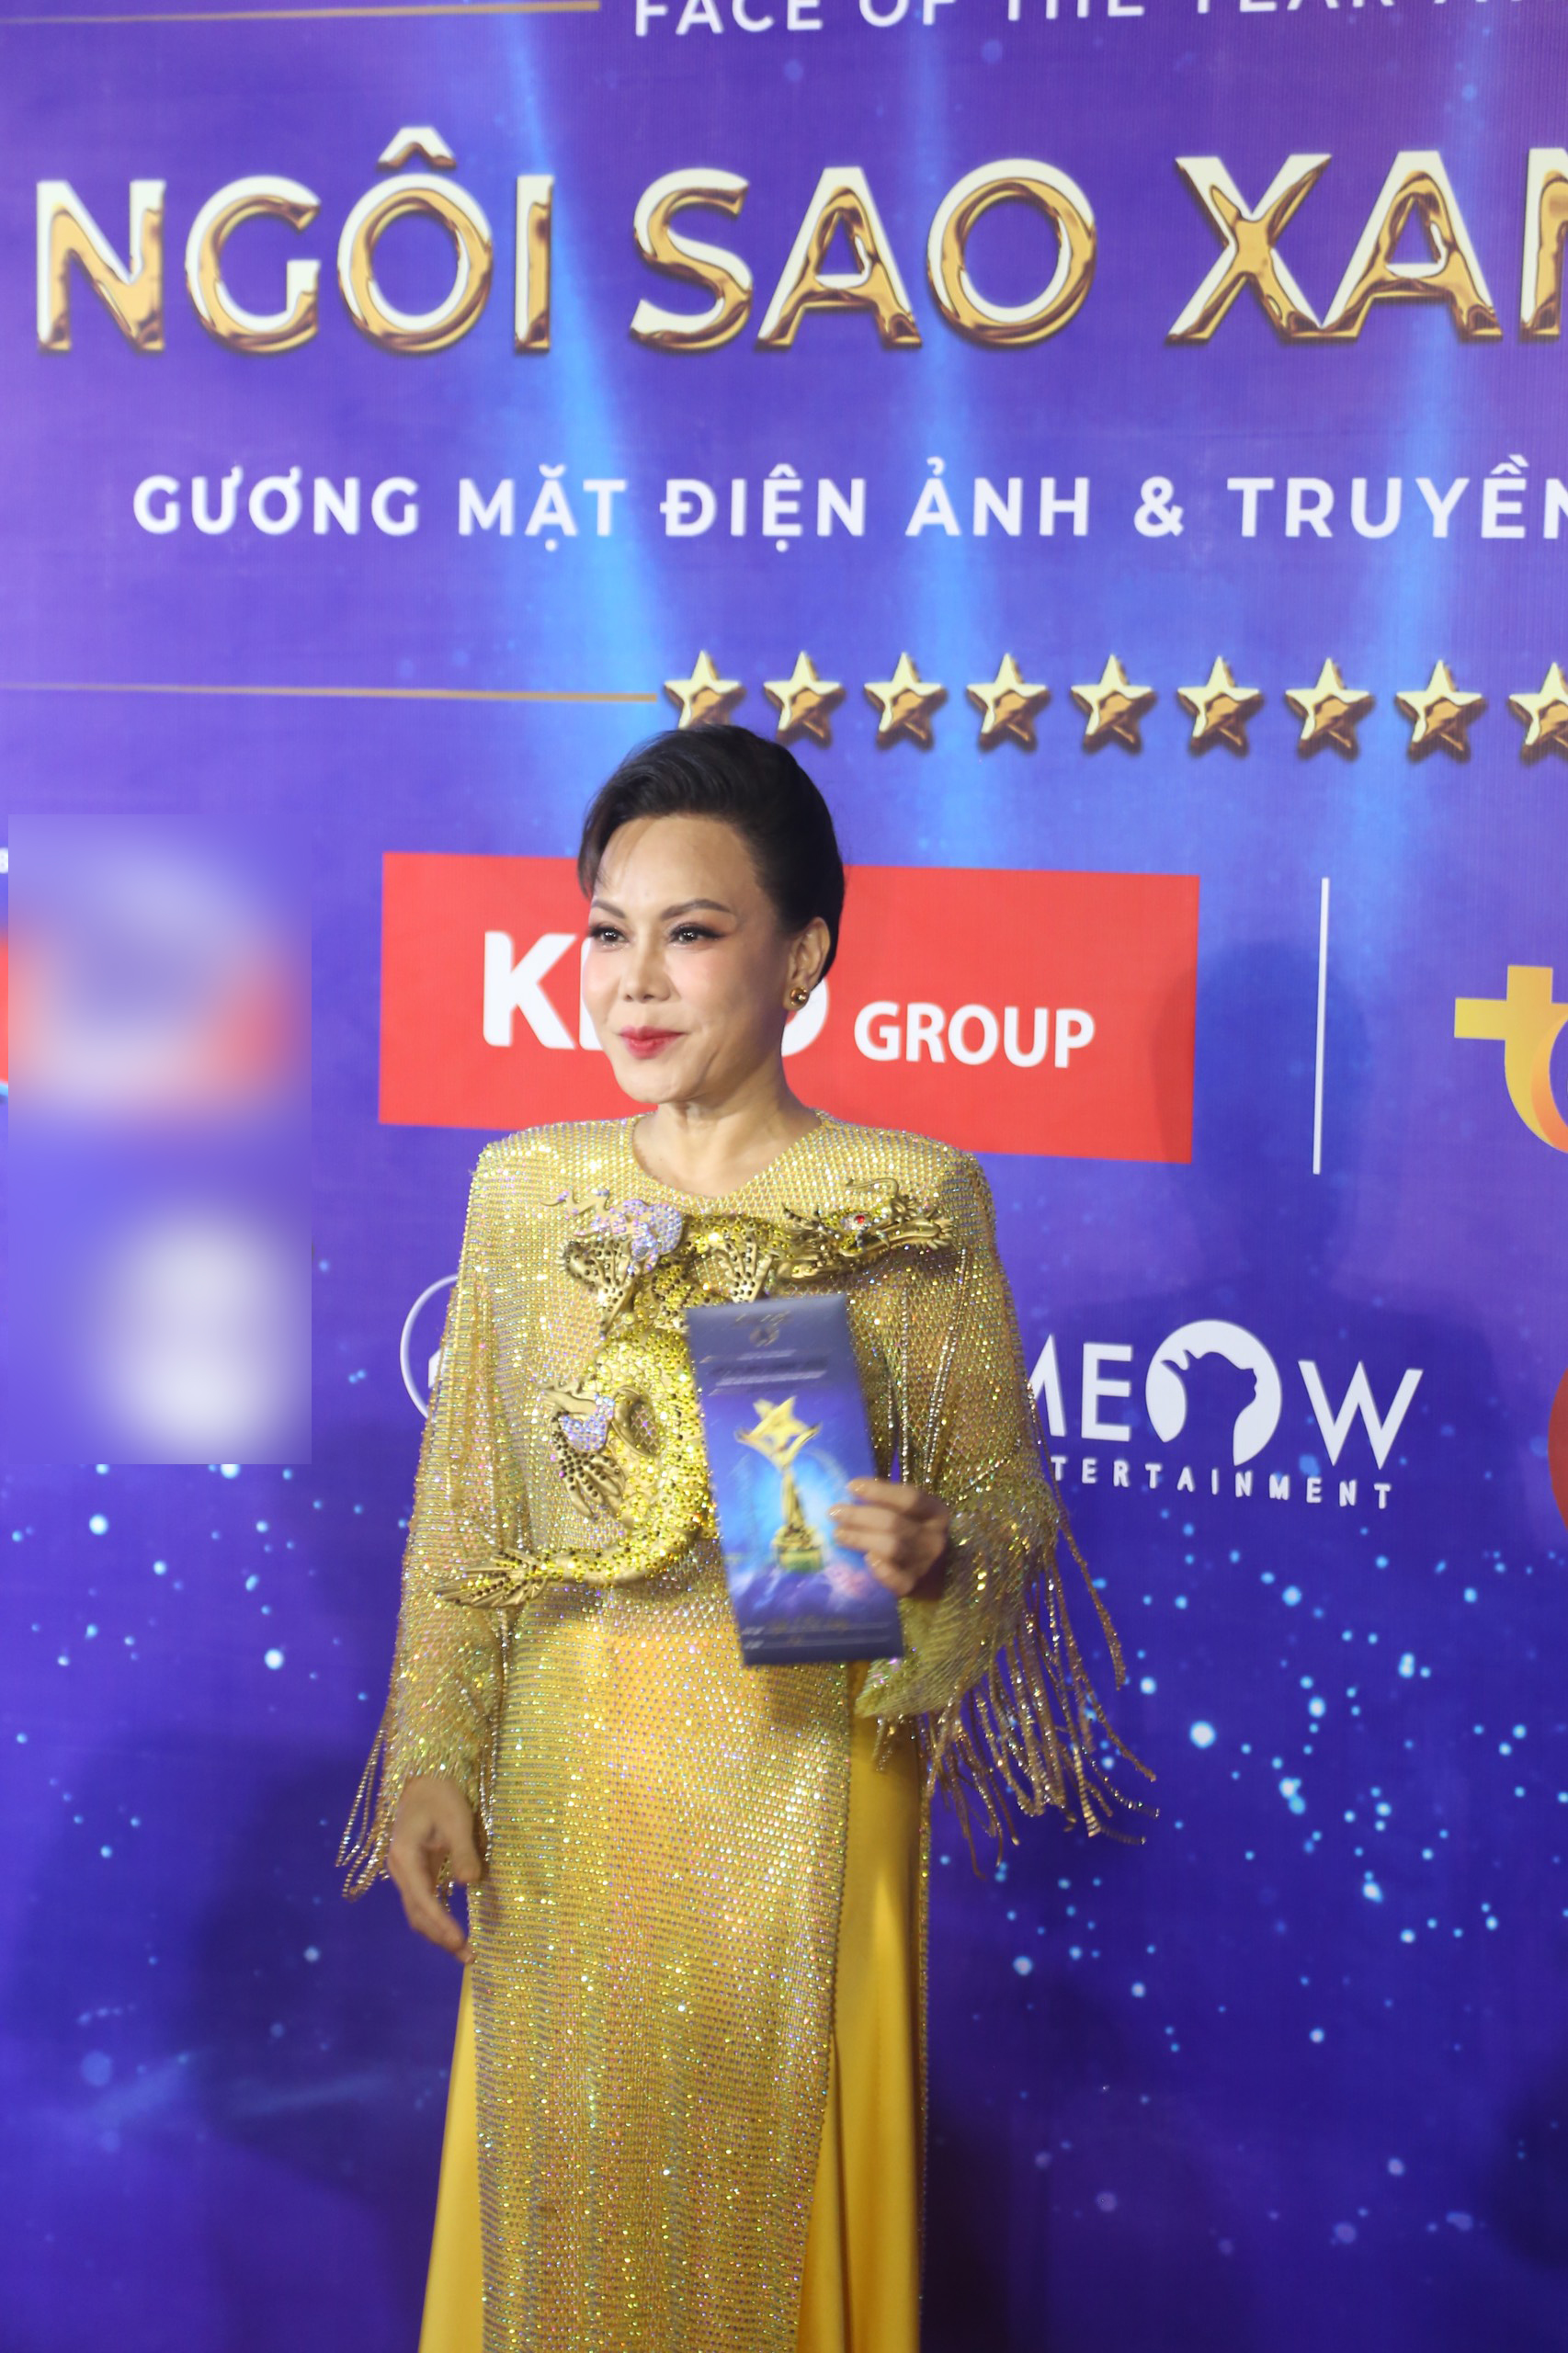 DJ Mie khoe nhan sắc như Hoa hậu, vợ một nam ca sĩ nổi tiếng lộ gương mặt khác lạ trên thảm đỏ - ảnh 1